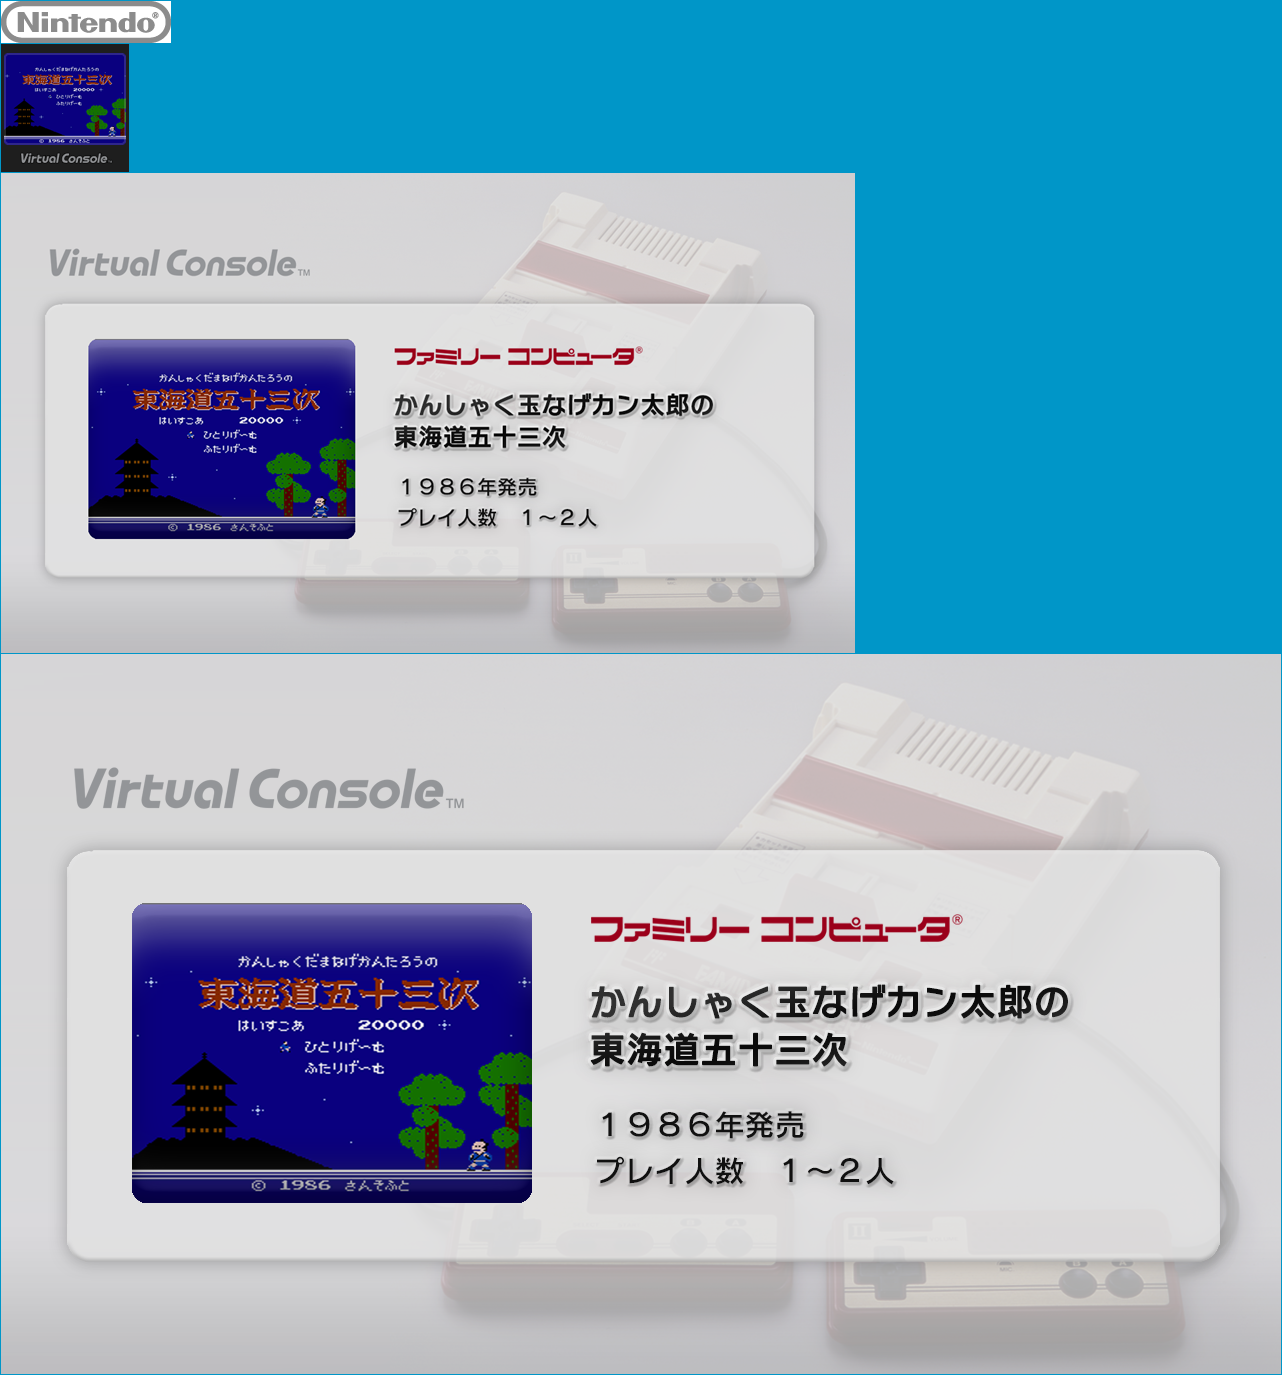 Virtual Console - Kanshaku tamanage Kantarō no Tōkaidō Gojūsan-tsugi